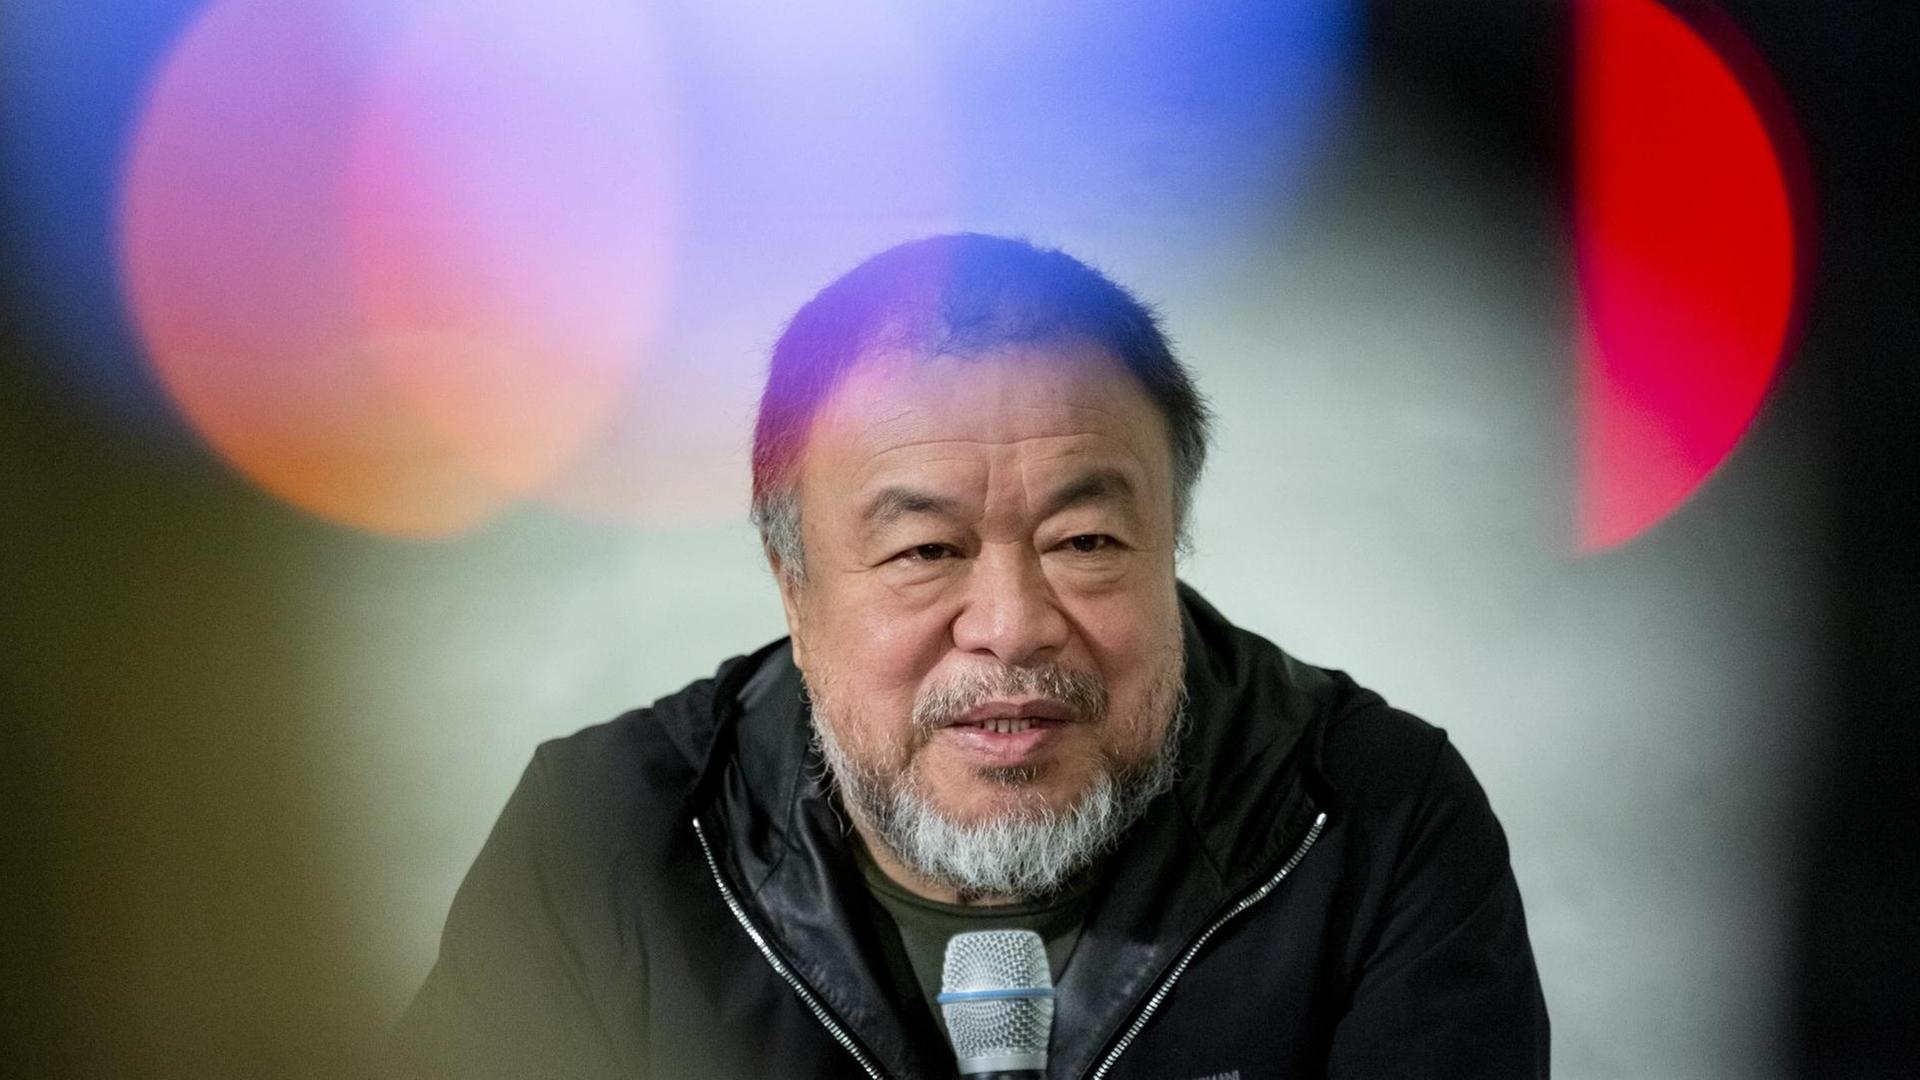 Der chinesische Künstler Ai Weiwei spricht bei der Präsentation seines Kunstwerks «Safety Jackets Zipped the Other Way» in seinem Atelier.